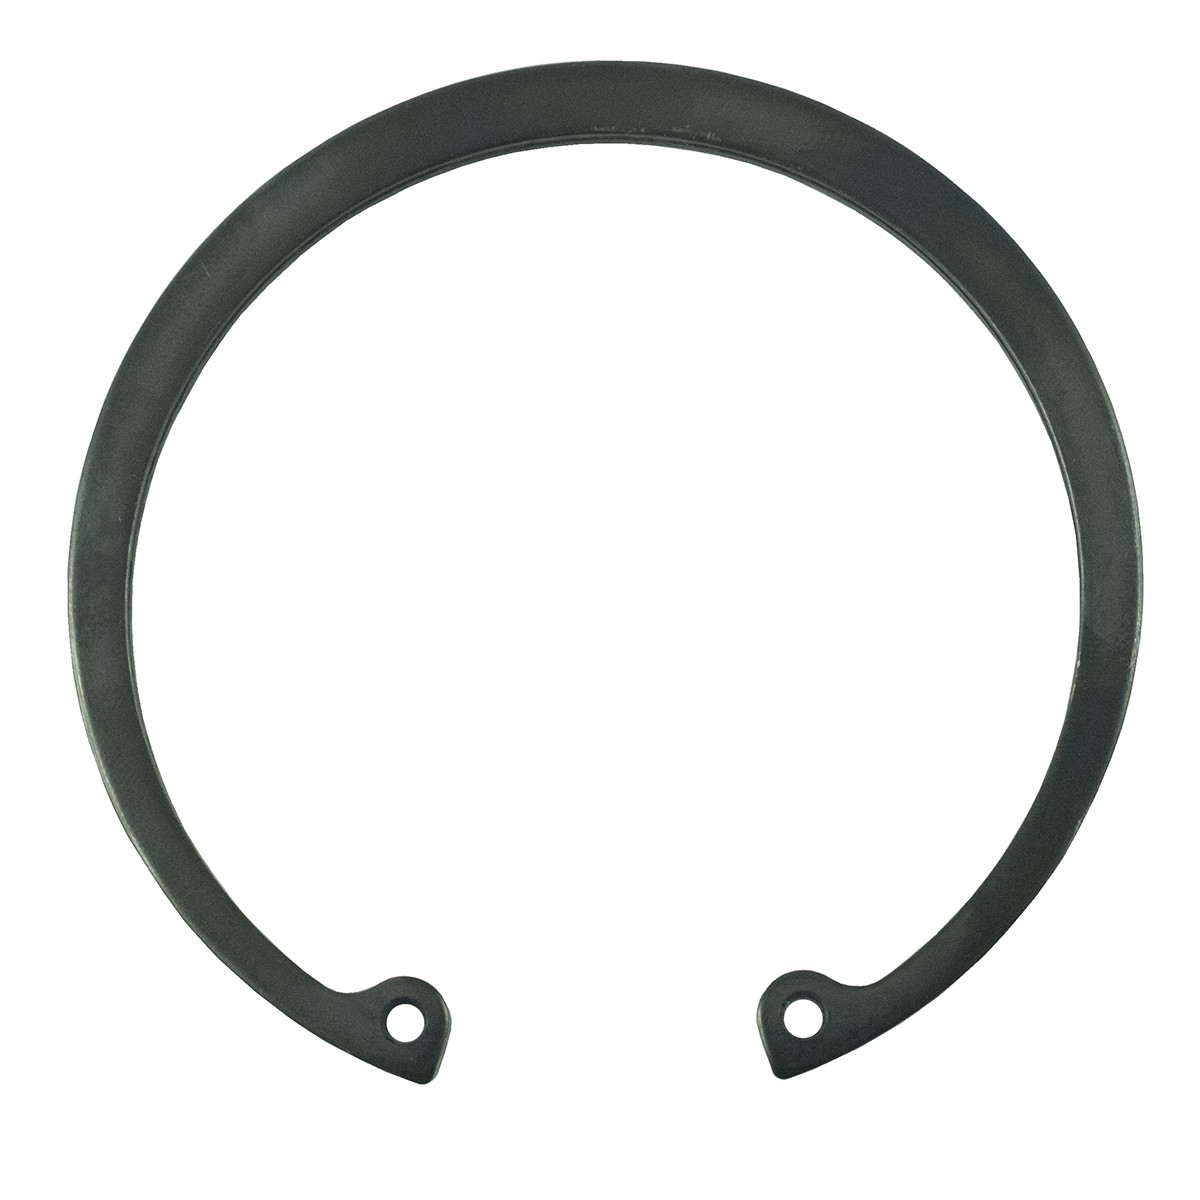 Seger ring 80 mm / LS MT3.35 / LS MT3.40 / S811085001 / 40198357